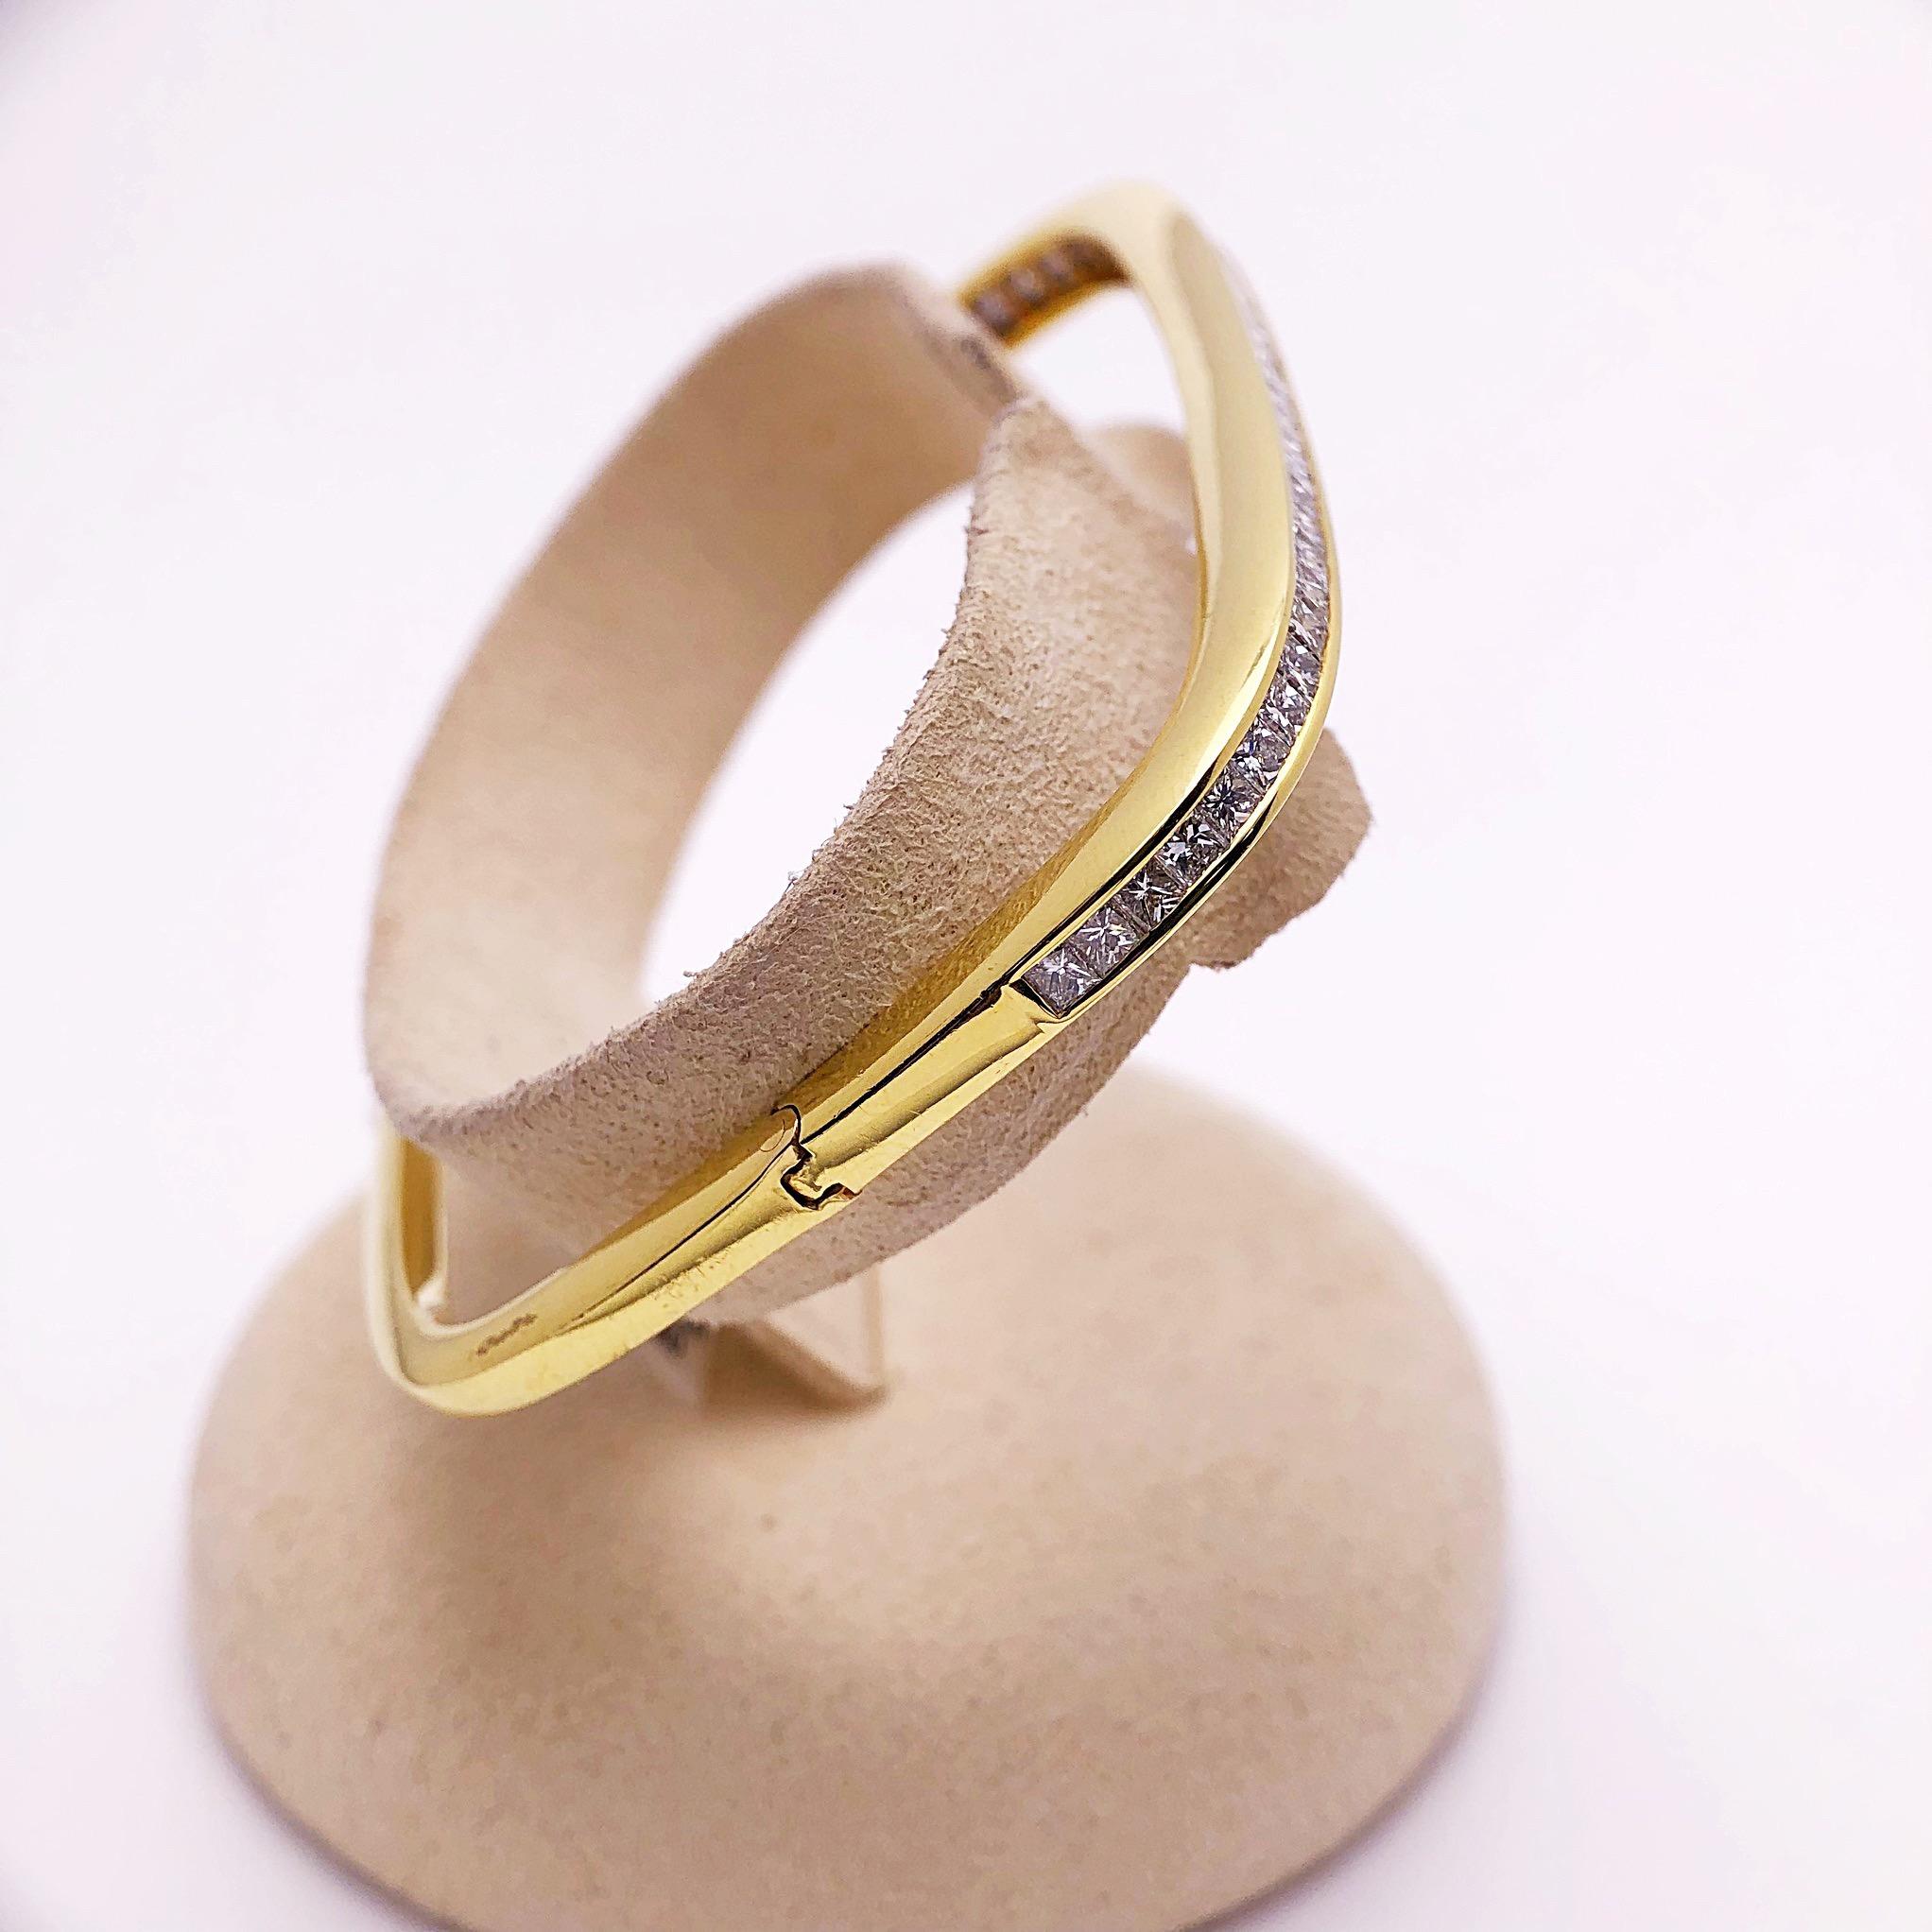 Ce bracelet bangle carré moderne en or jaune 18 carats est serti de 2,96 carats de diamants taille princesse. La rangée unique de diamants crée un bel éclat sur le poignet. Le diamètre intérieur est de 2,25